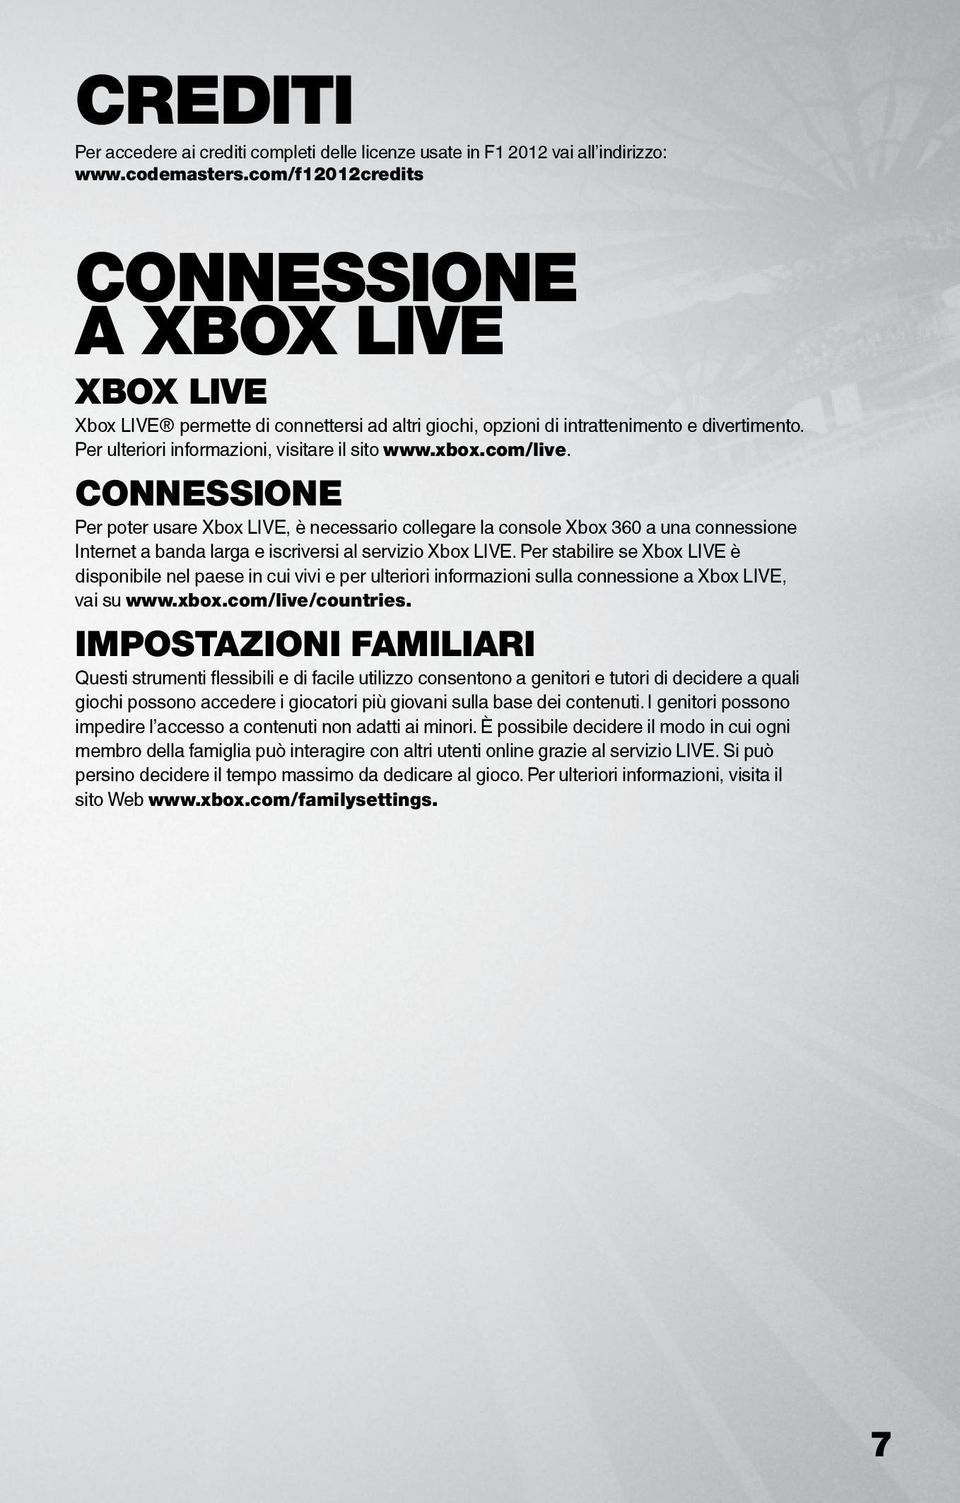 com/live. CONNESSIONE Per poter usare Xbox LIVE, è necessario collegare la console Xbox 360 a una connessione Internet a banda larga e iscriversi al servizio Xbox LIVE.